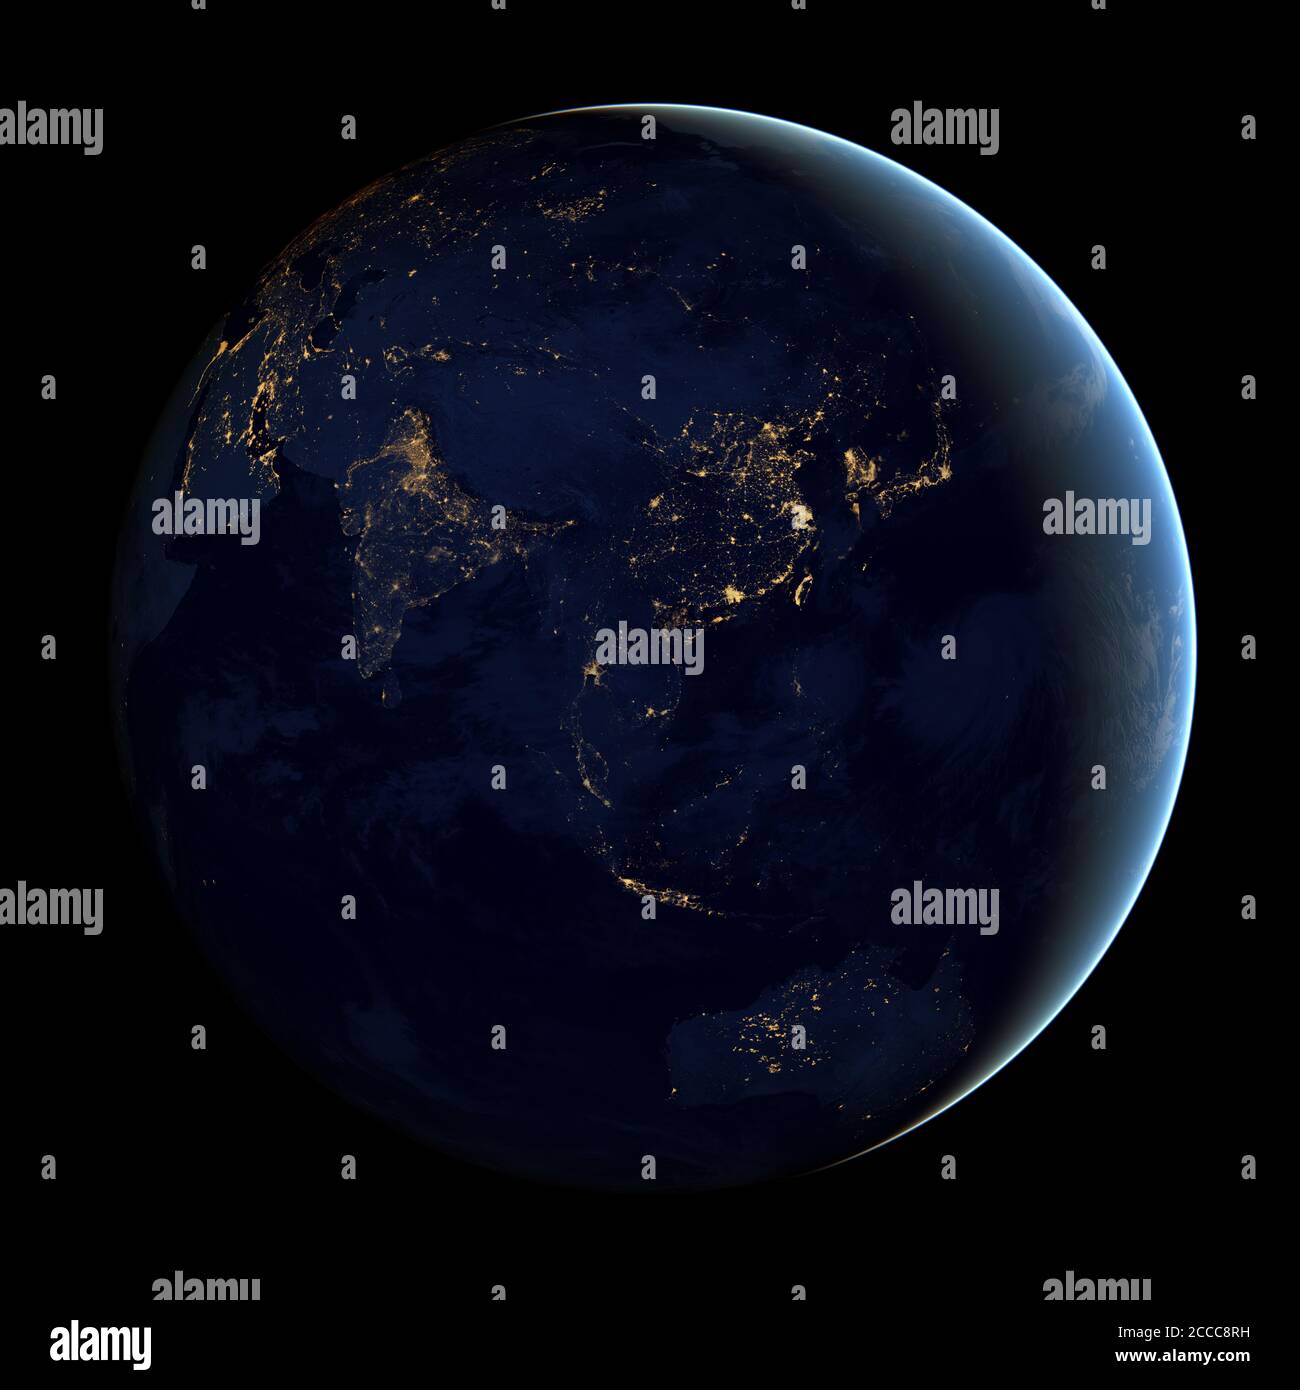 Questa immagine composita - fatta da dati satellitari della NASA - mostra l'emisfero dell'Estremo Oriente della Terra di notte - Foto: Geopix/NASA/Alamy Stock Photo Foto Stock